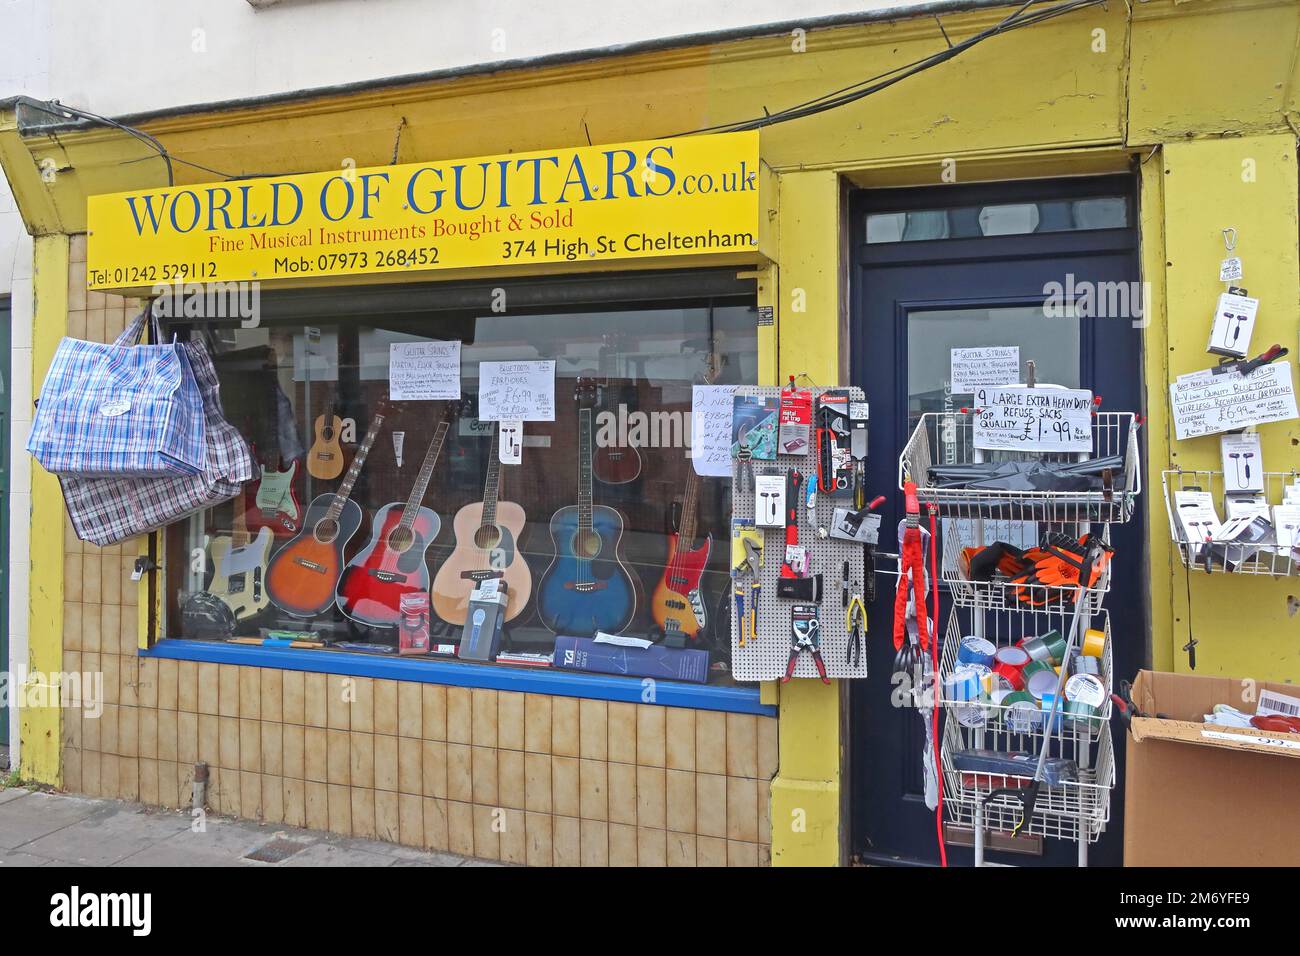 Boutique d'instruments de musique indépendante, World of Guitars, 374 High St Cheltenham, Gloucestershire, Angleterre, Royaume-Uni, GL50 3JE Banque D'Images